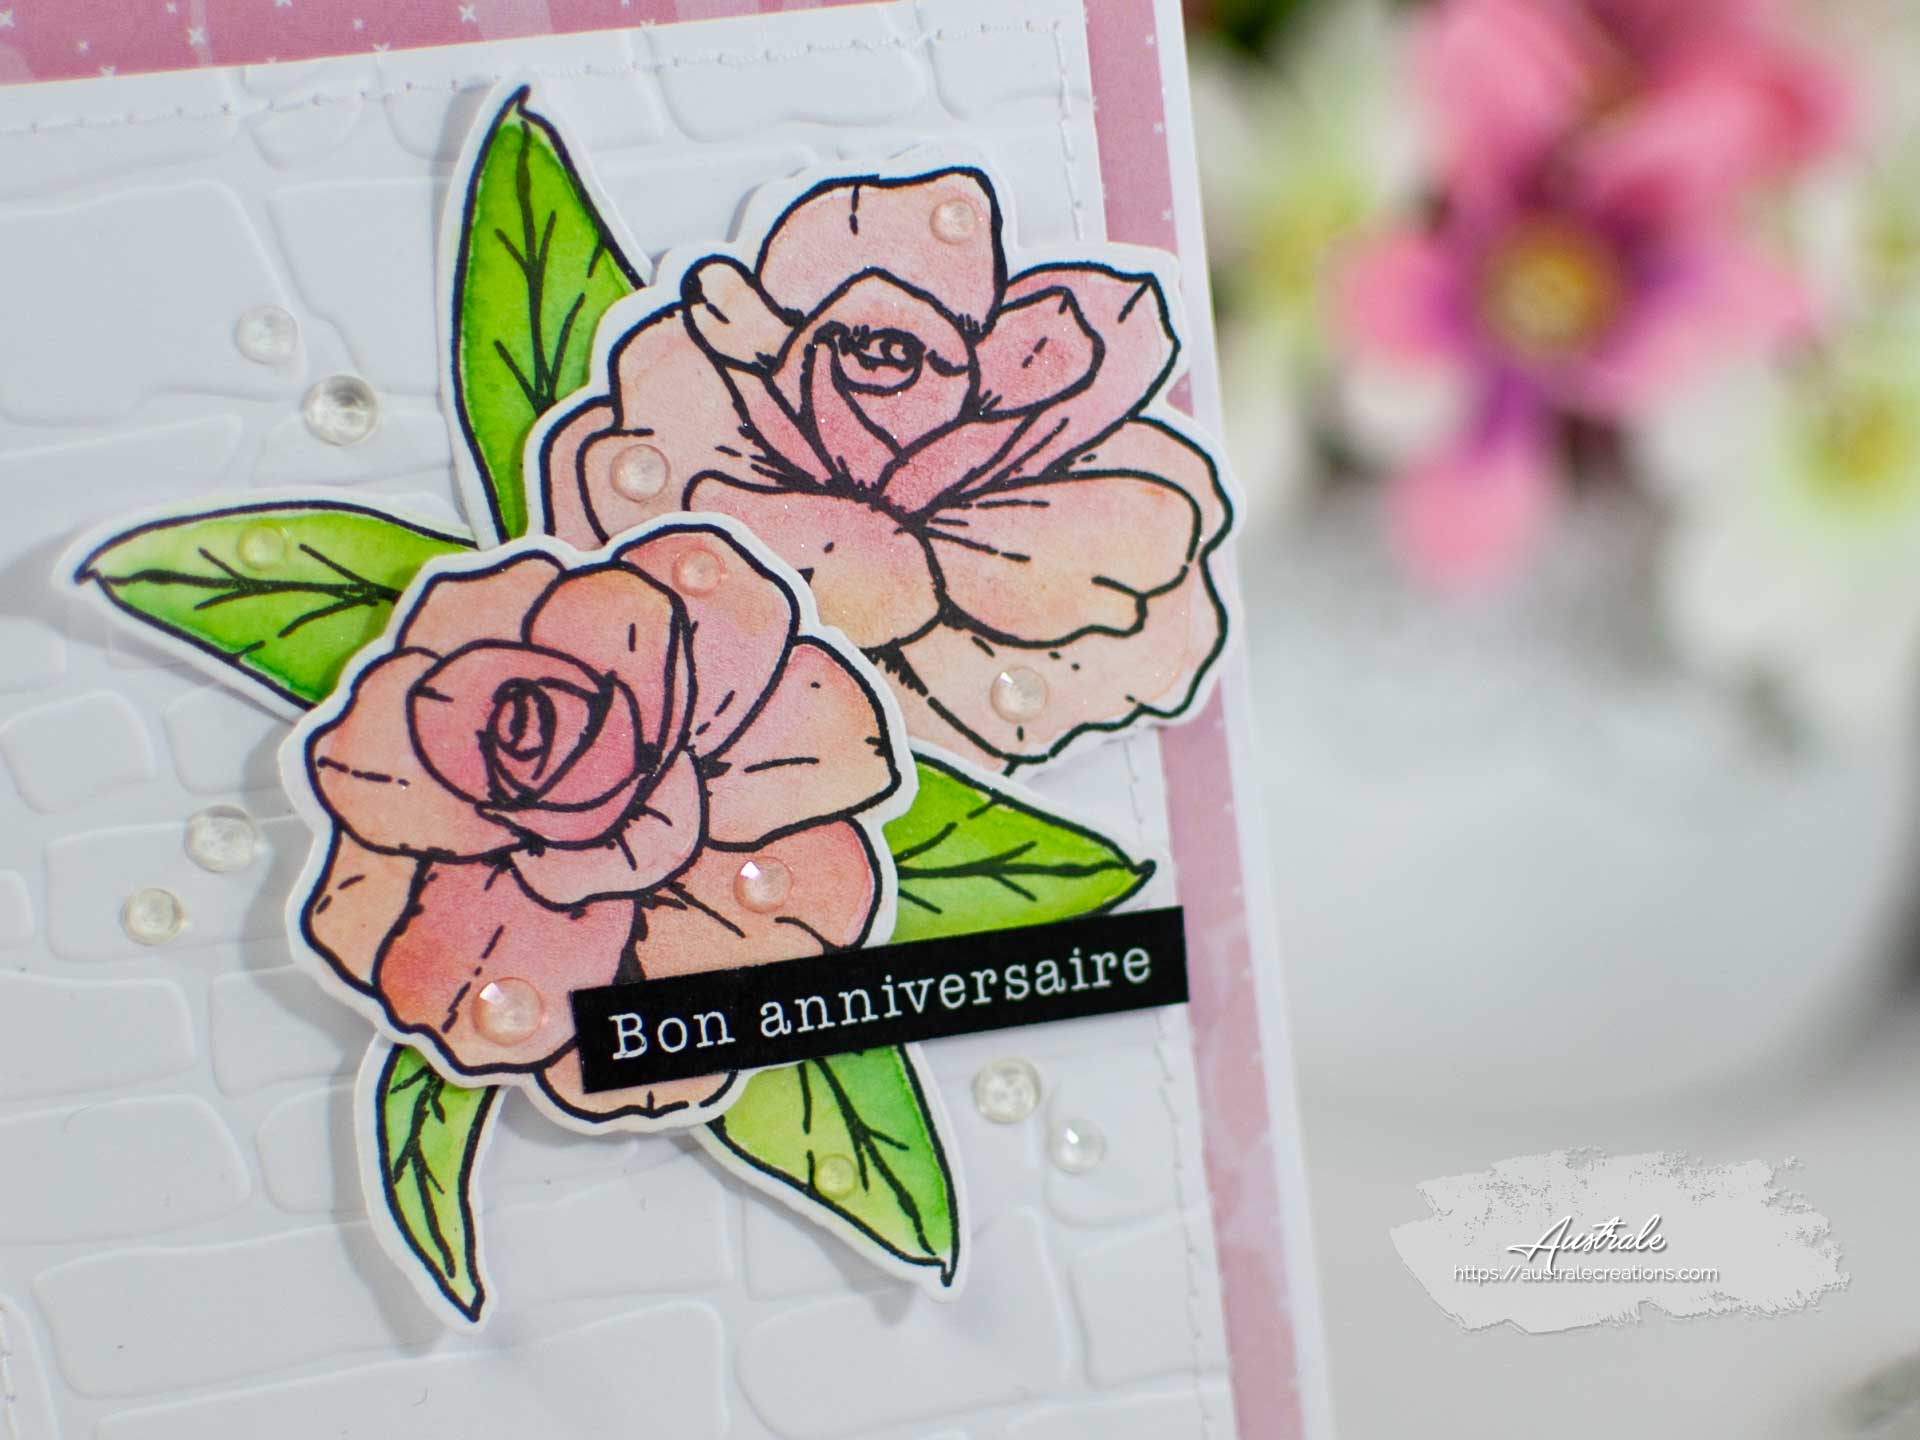 Création d'une carte pour anniversaire. Elle est décorée de fleurs et feuillages mis en couleurs à l'aquarelle dans un combo en rose, blanc et vert.